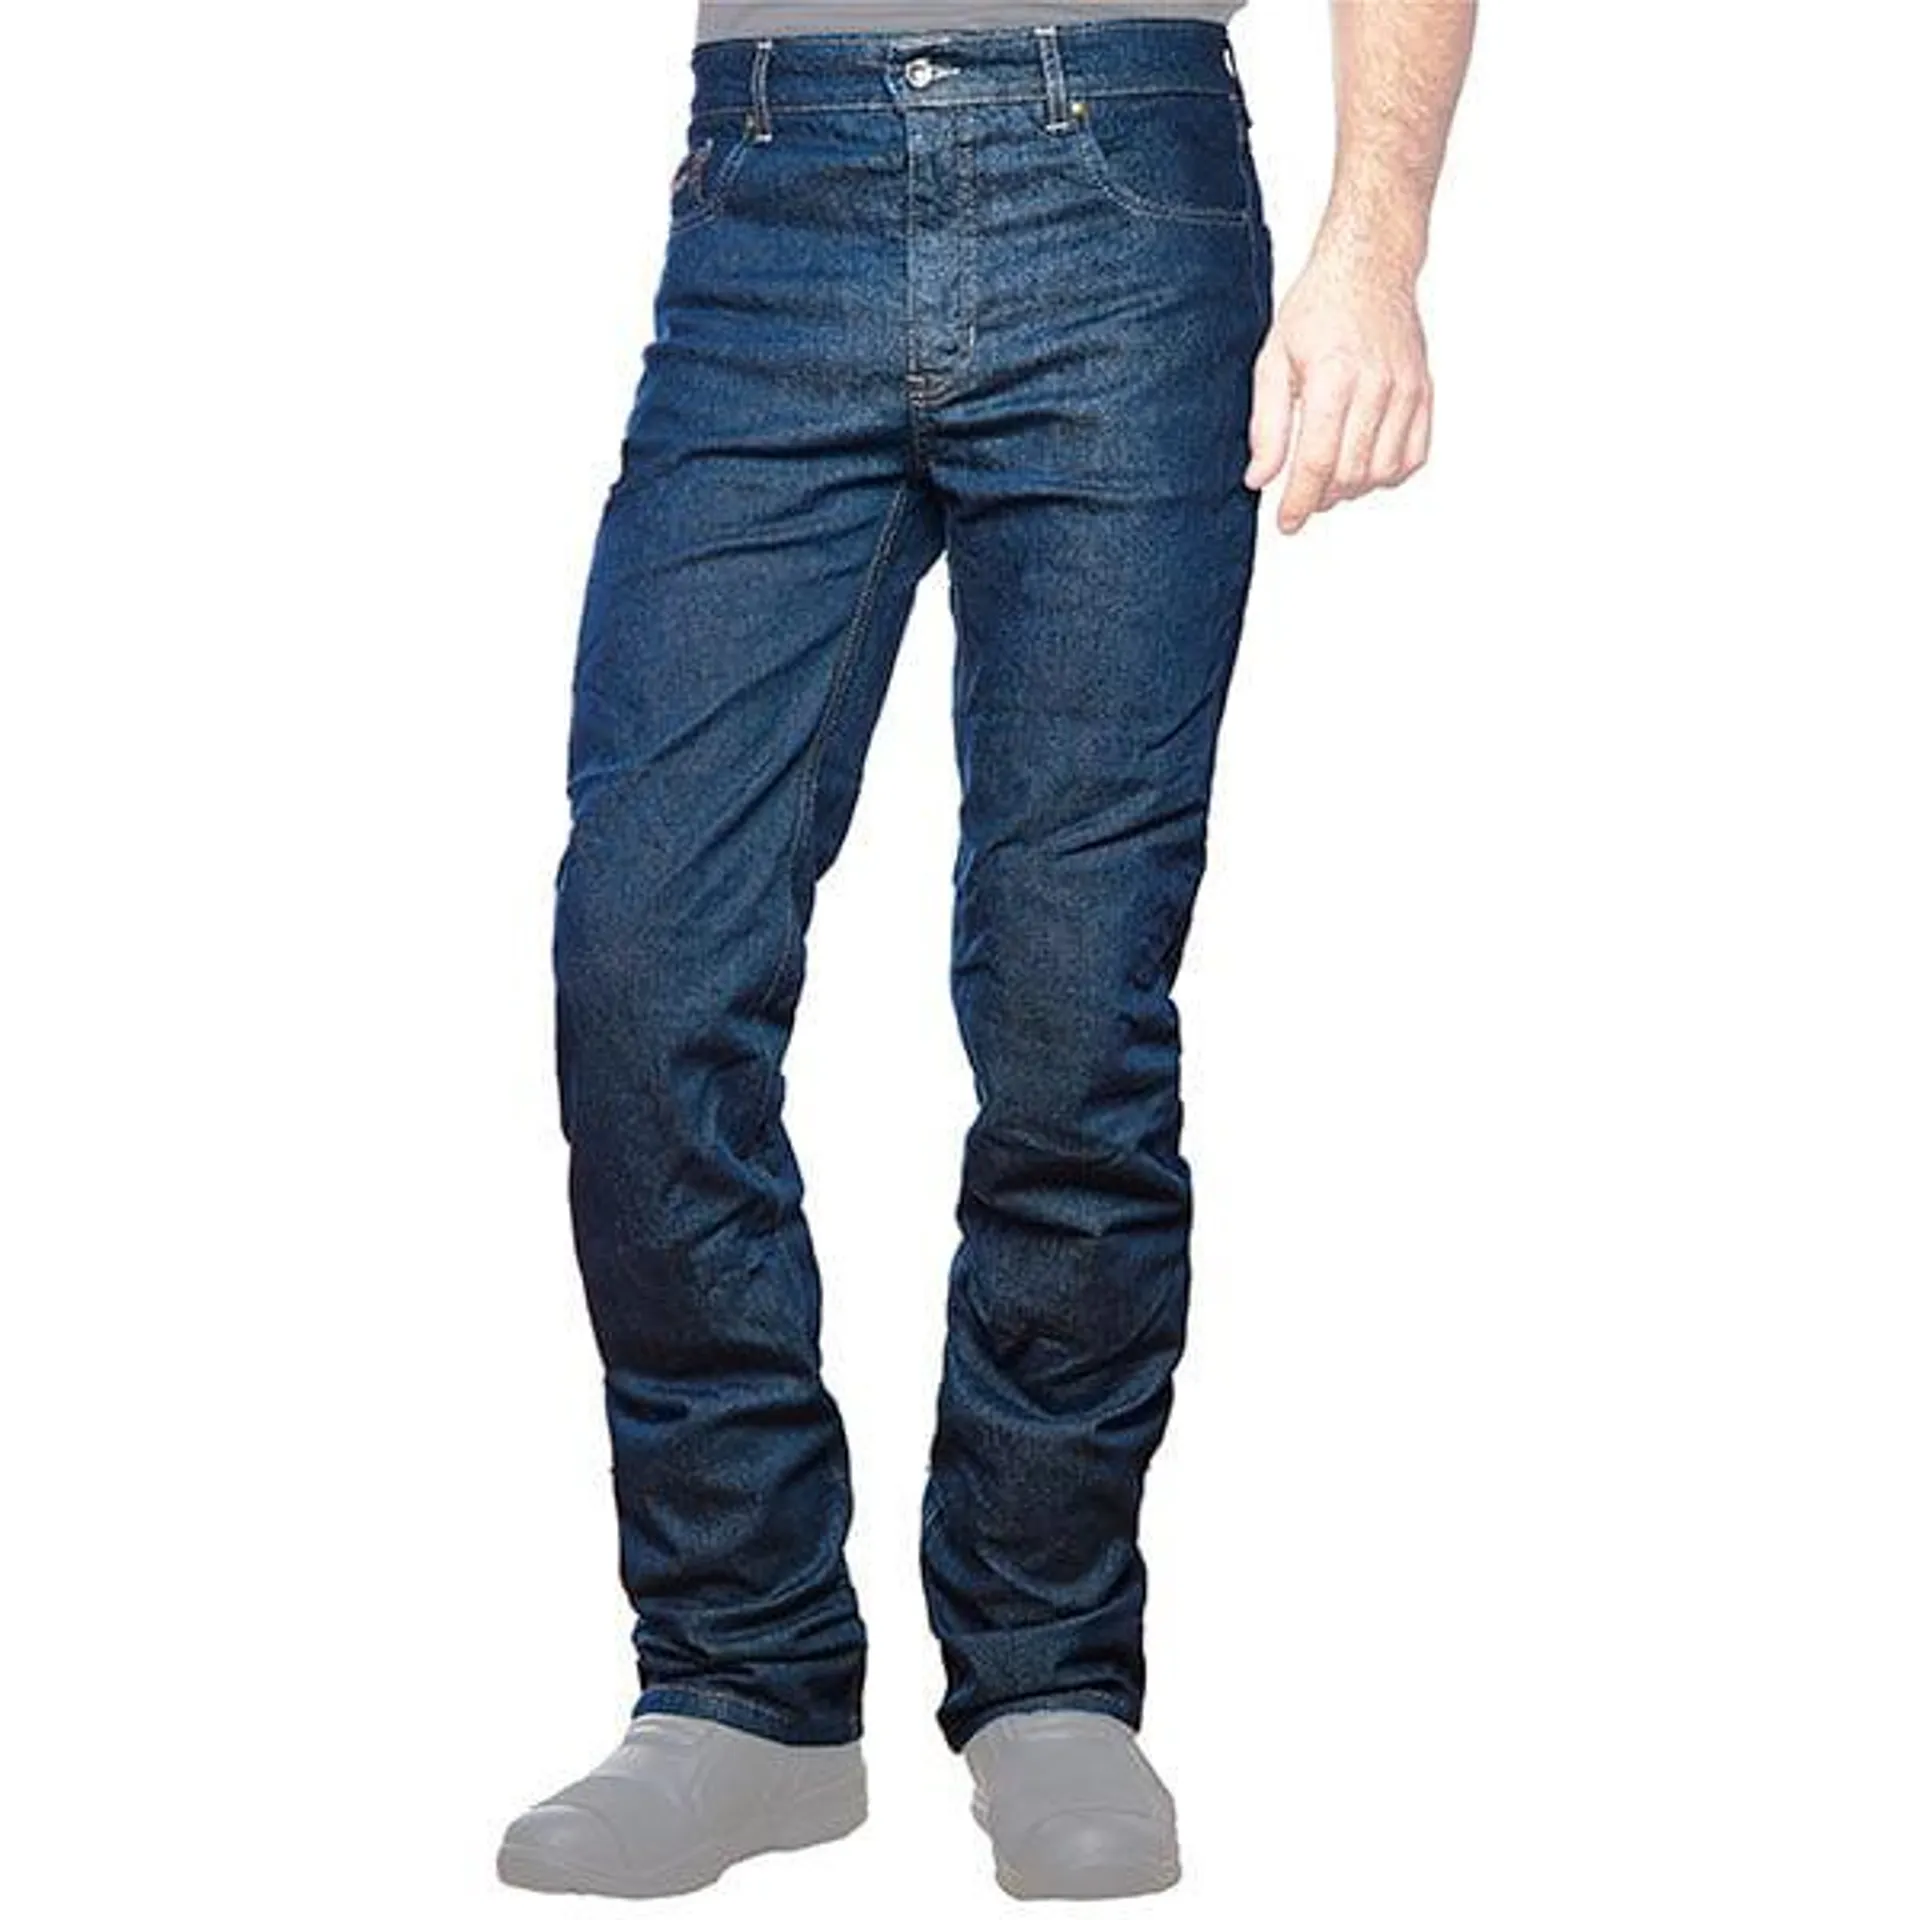 Furygan 01 Stretch Aramid Fibre Jeans - Denim Blue